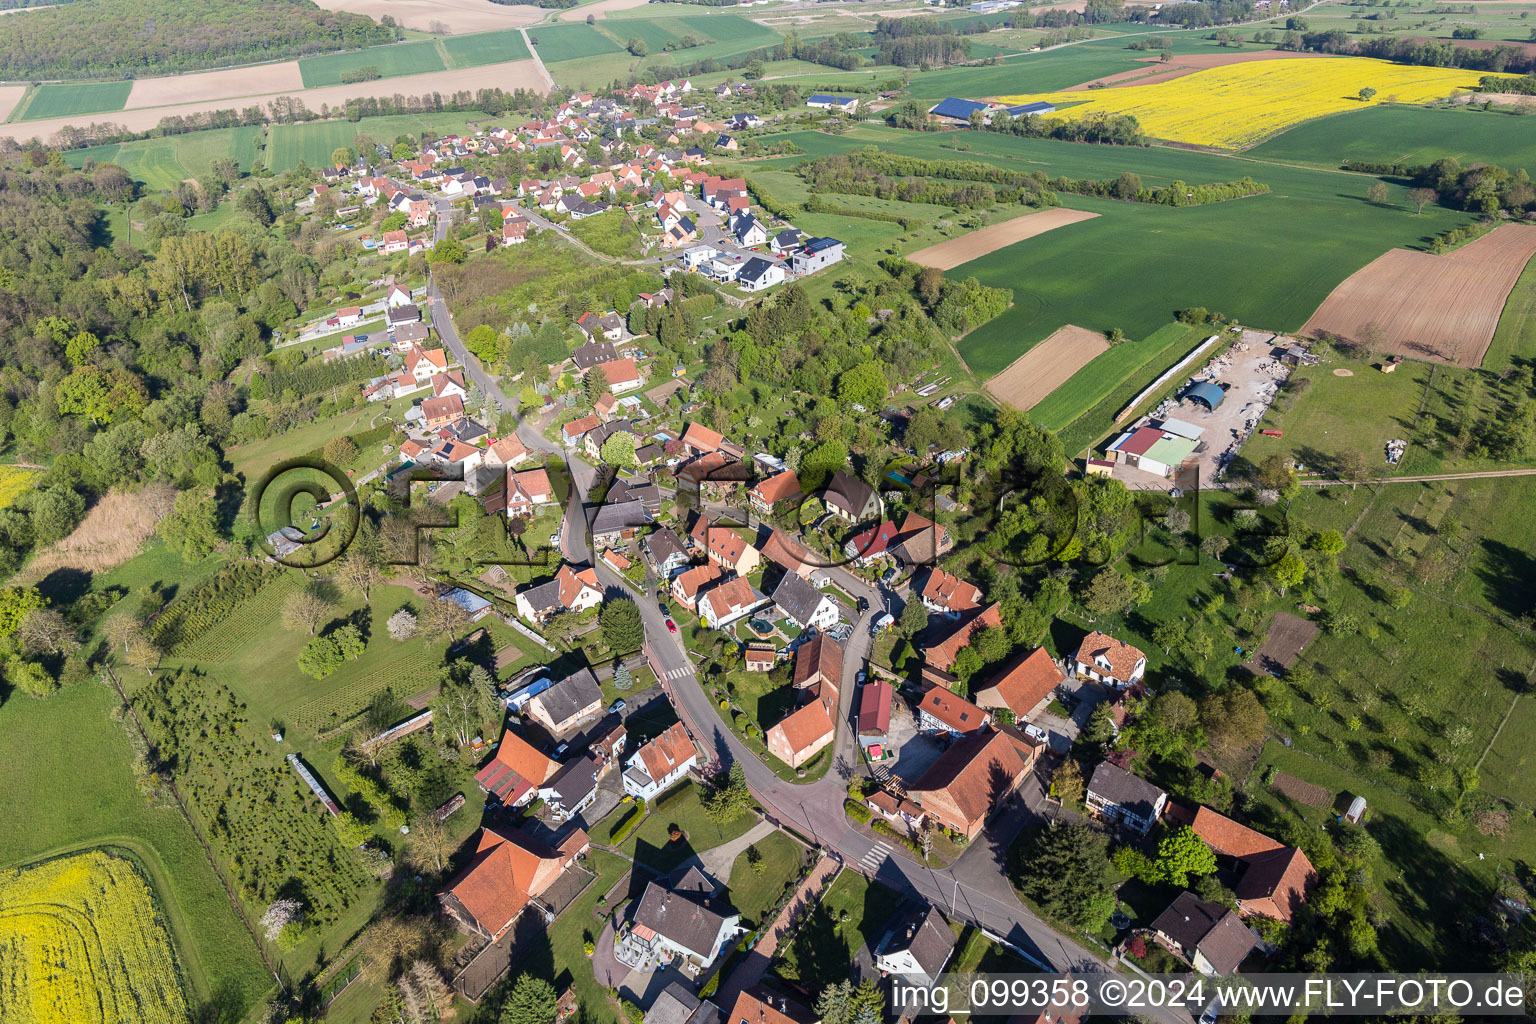 Vue aérienne de Champs agricoles et surfaces utilisables à Gunstett dans le département Bas Rhin, France